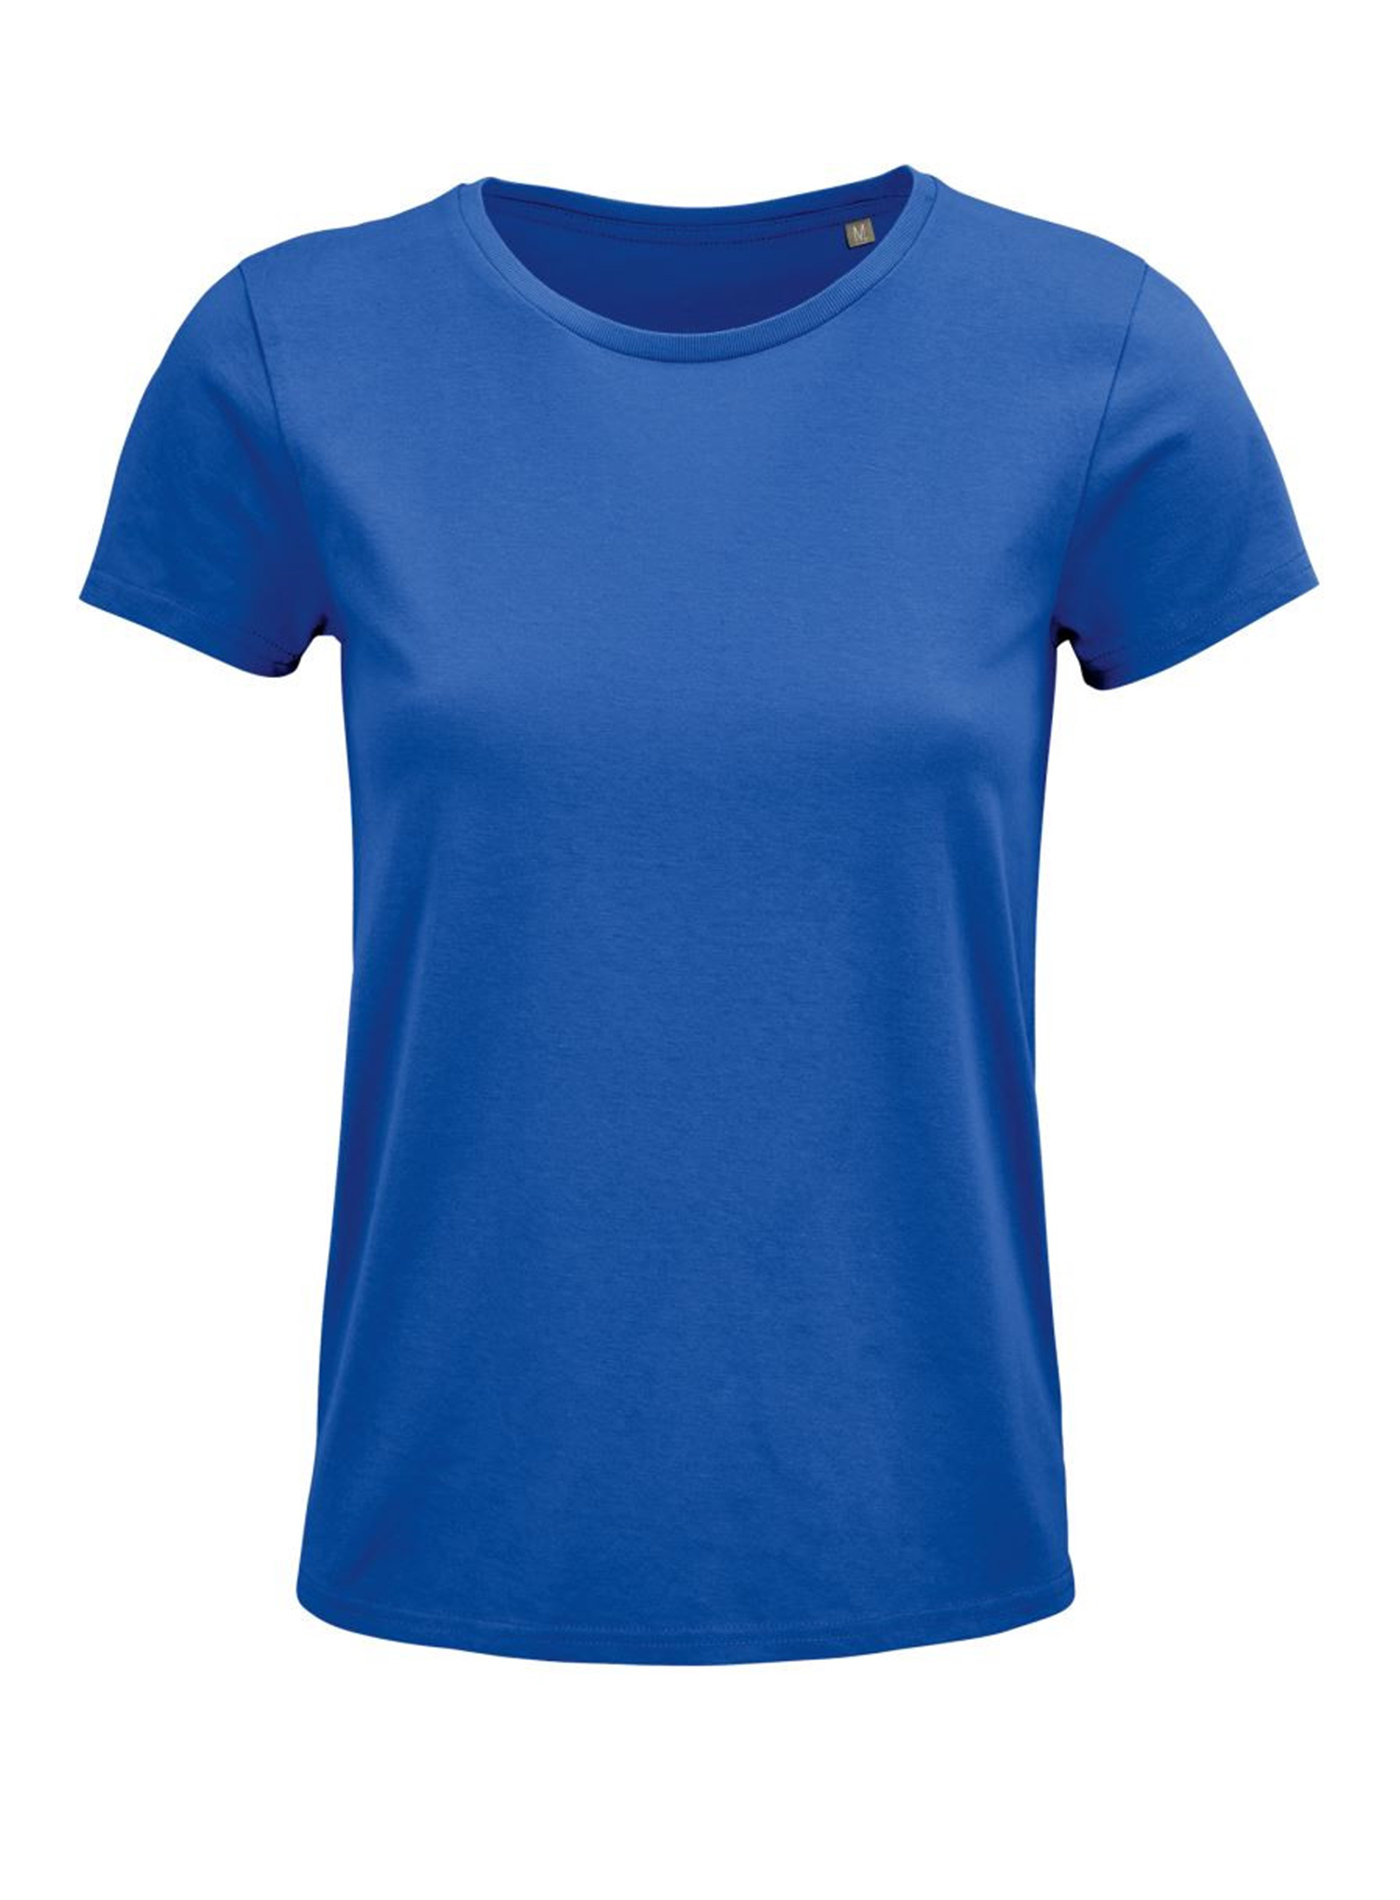 Dámské tričko SOL'S Crusader - královská modrá S